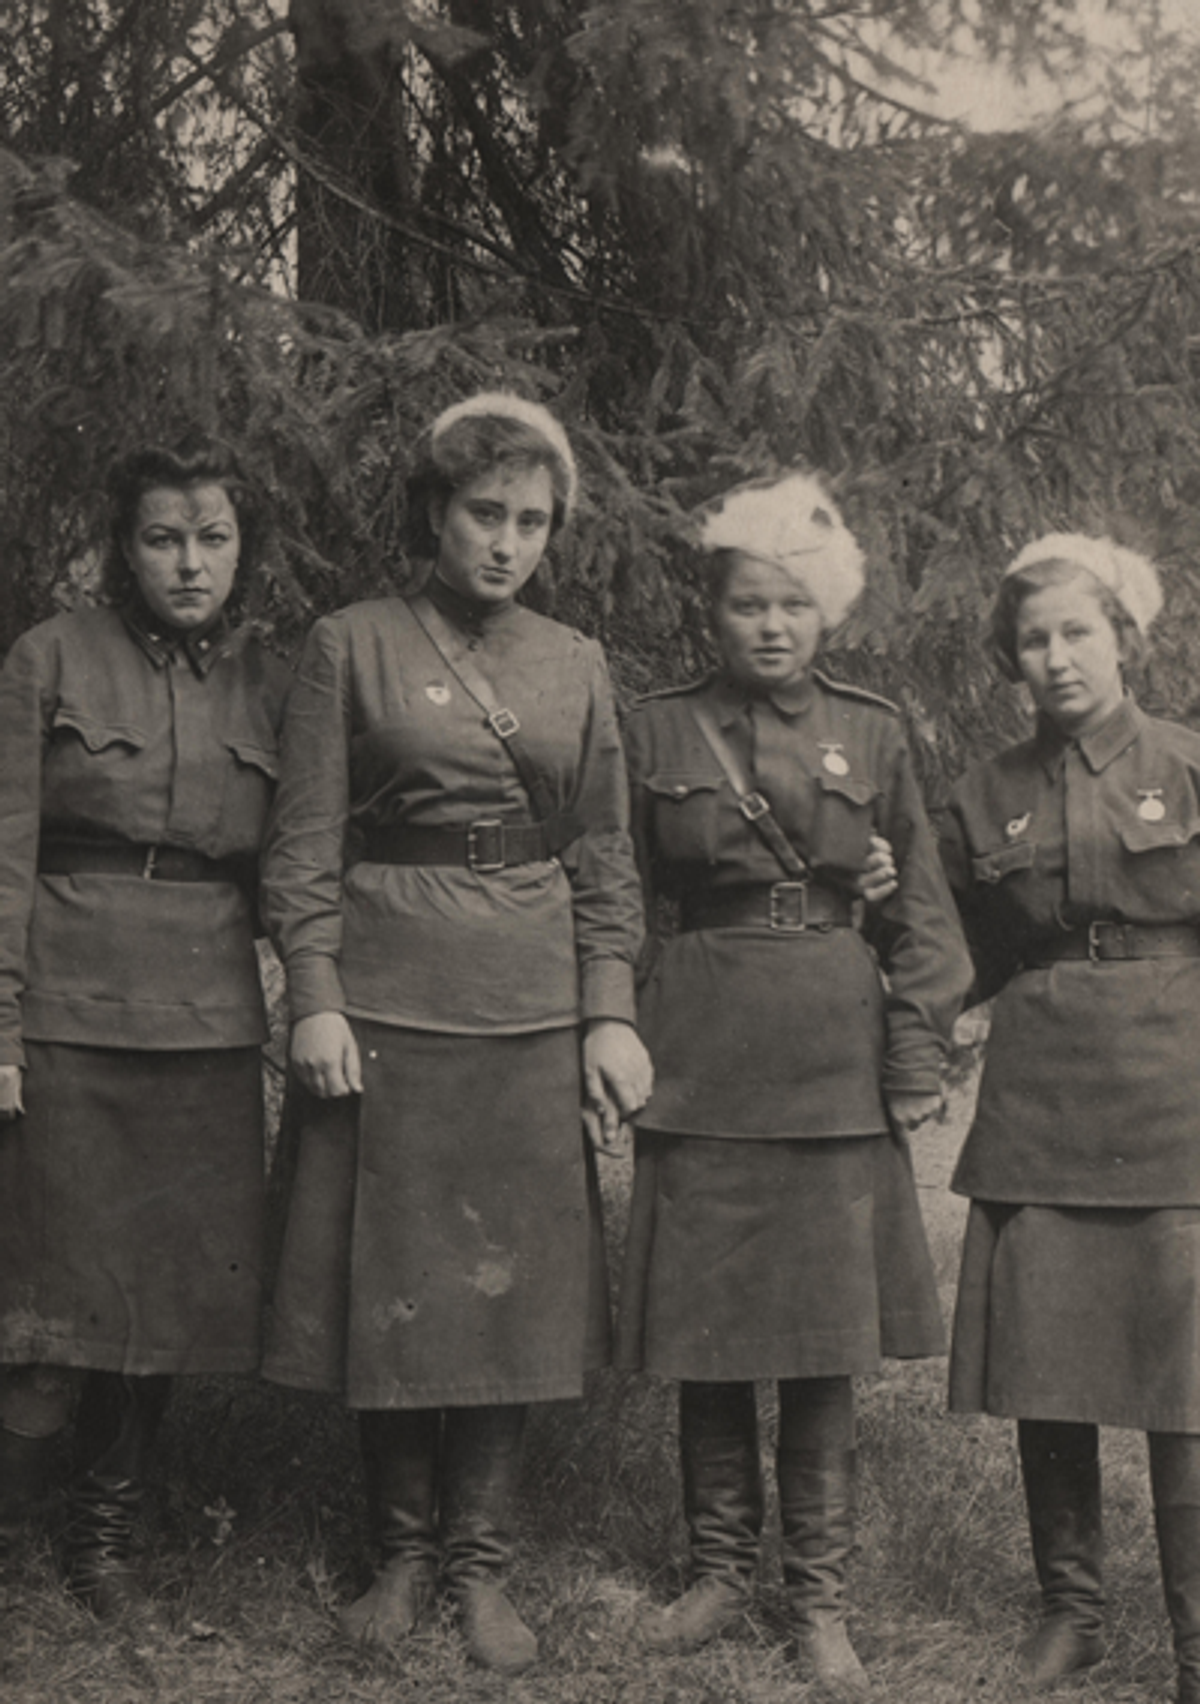 Elena (second from left) at the front, May 30, 1943 (Photo courtesy Lyuba Summ)